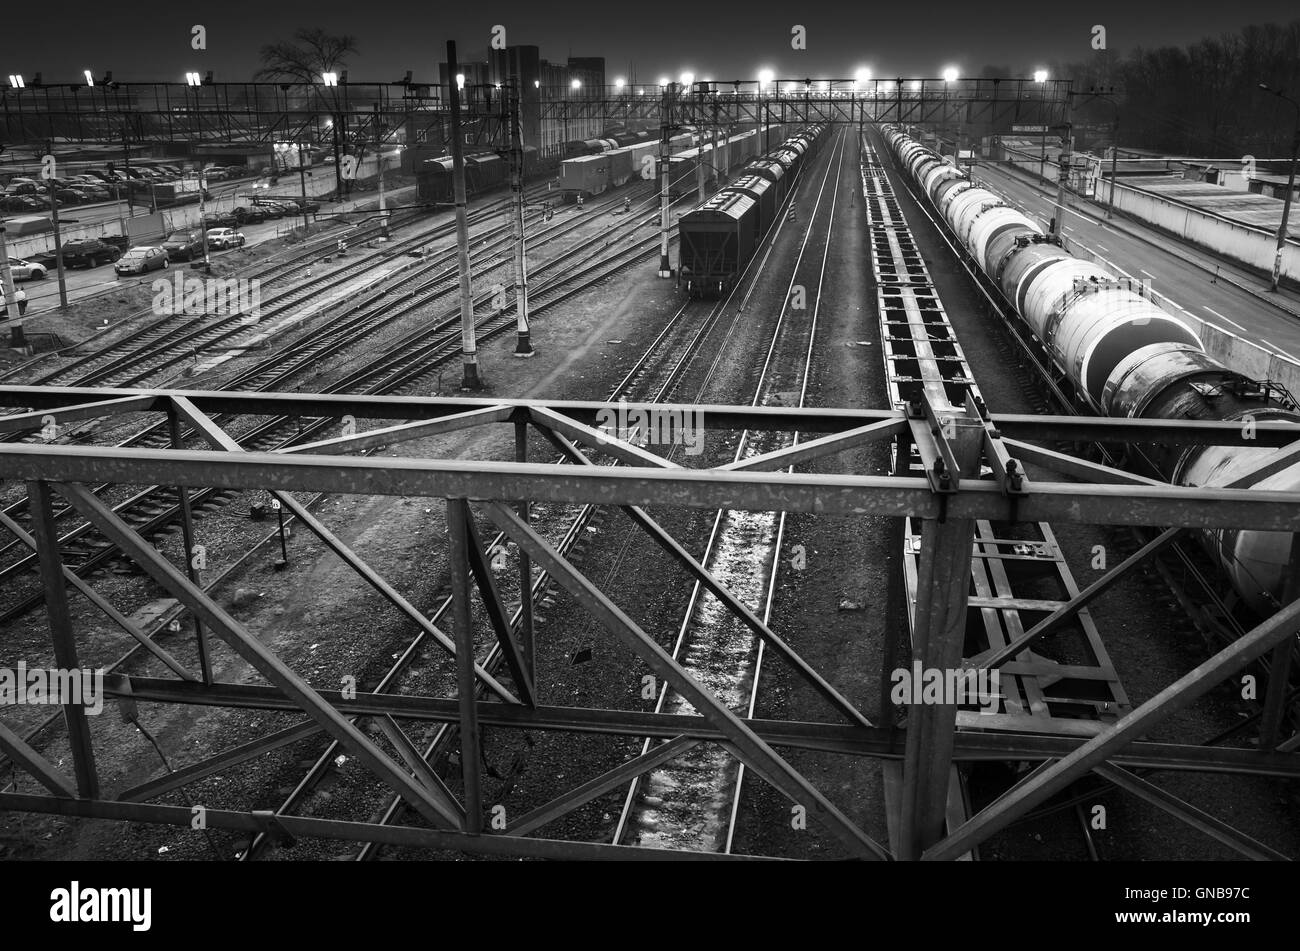 La gare de tri avec éclairage de nuit, photo en noir et blanc Banque D'Images